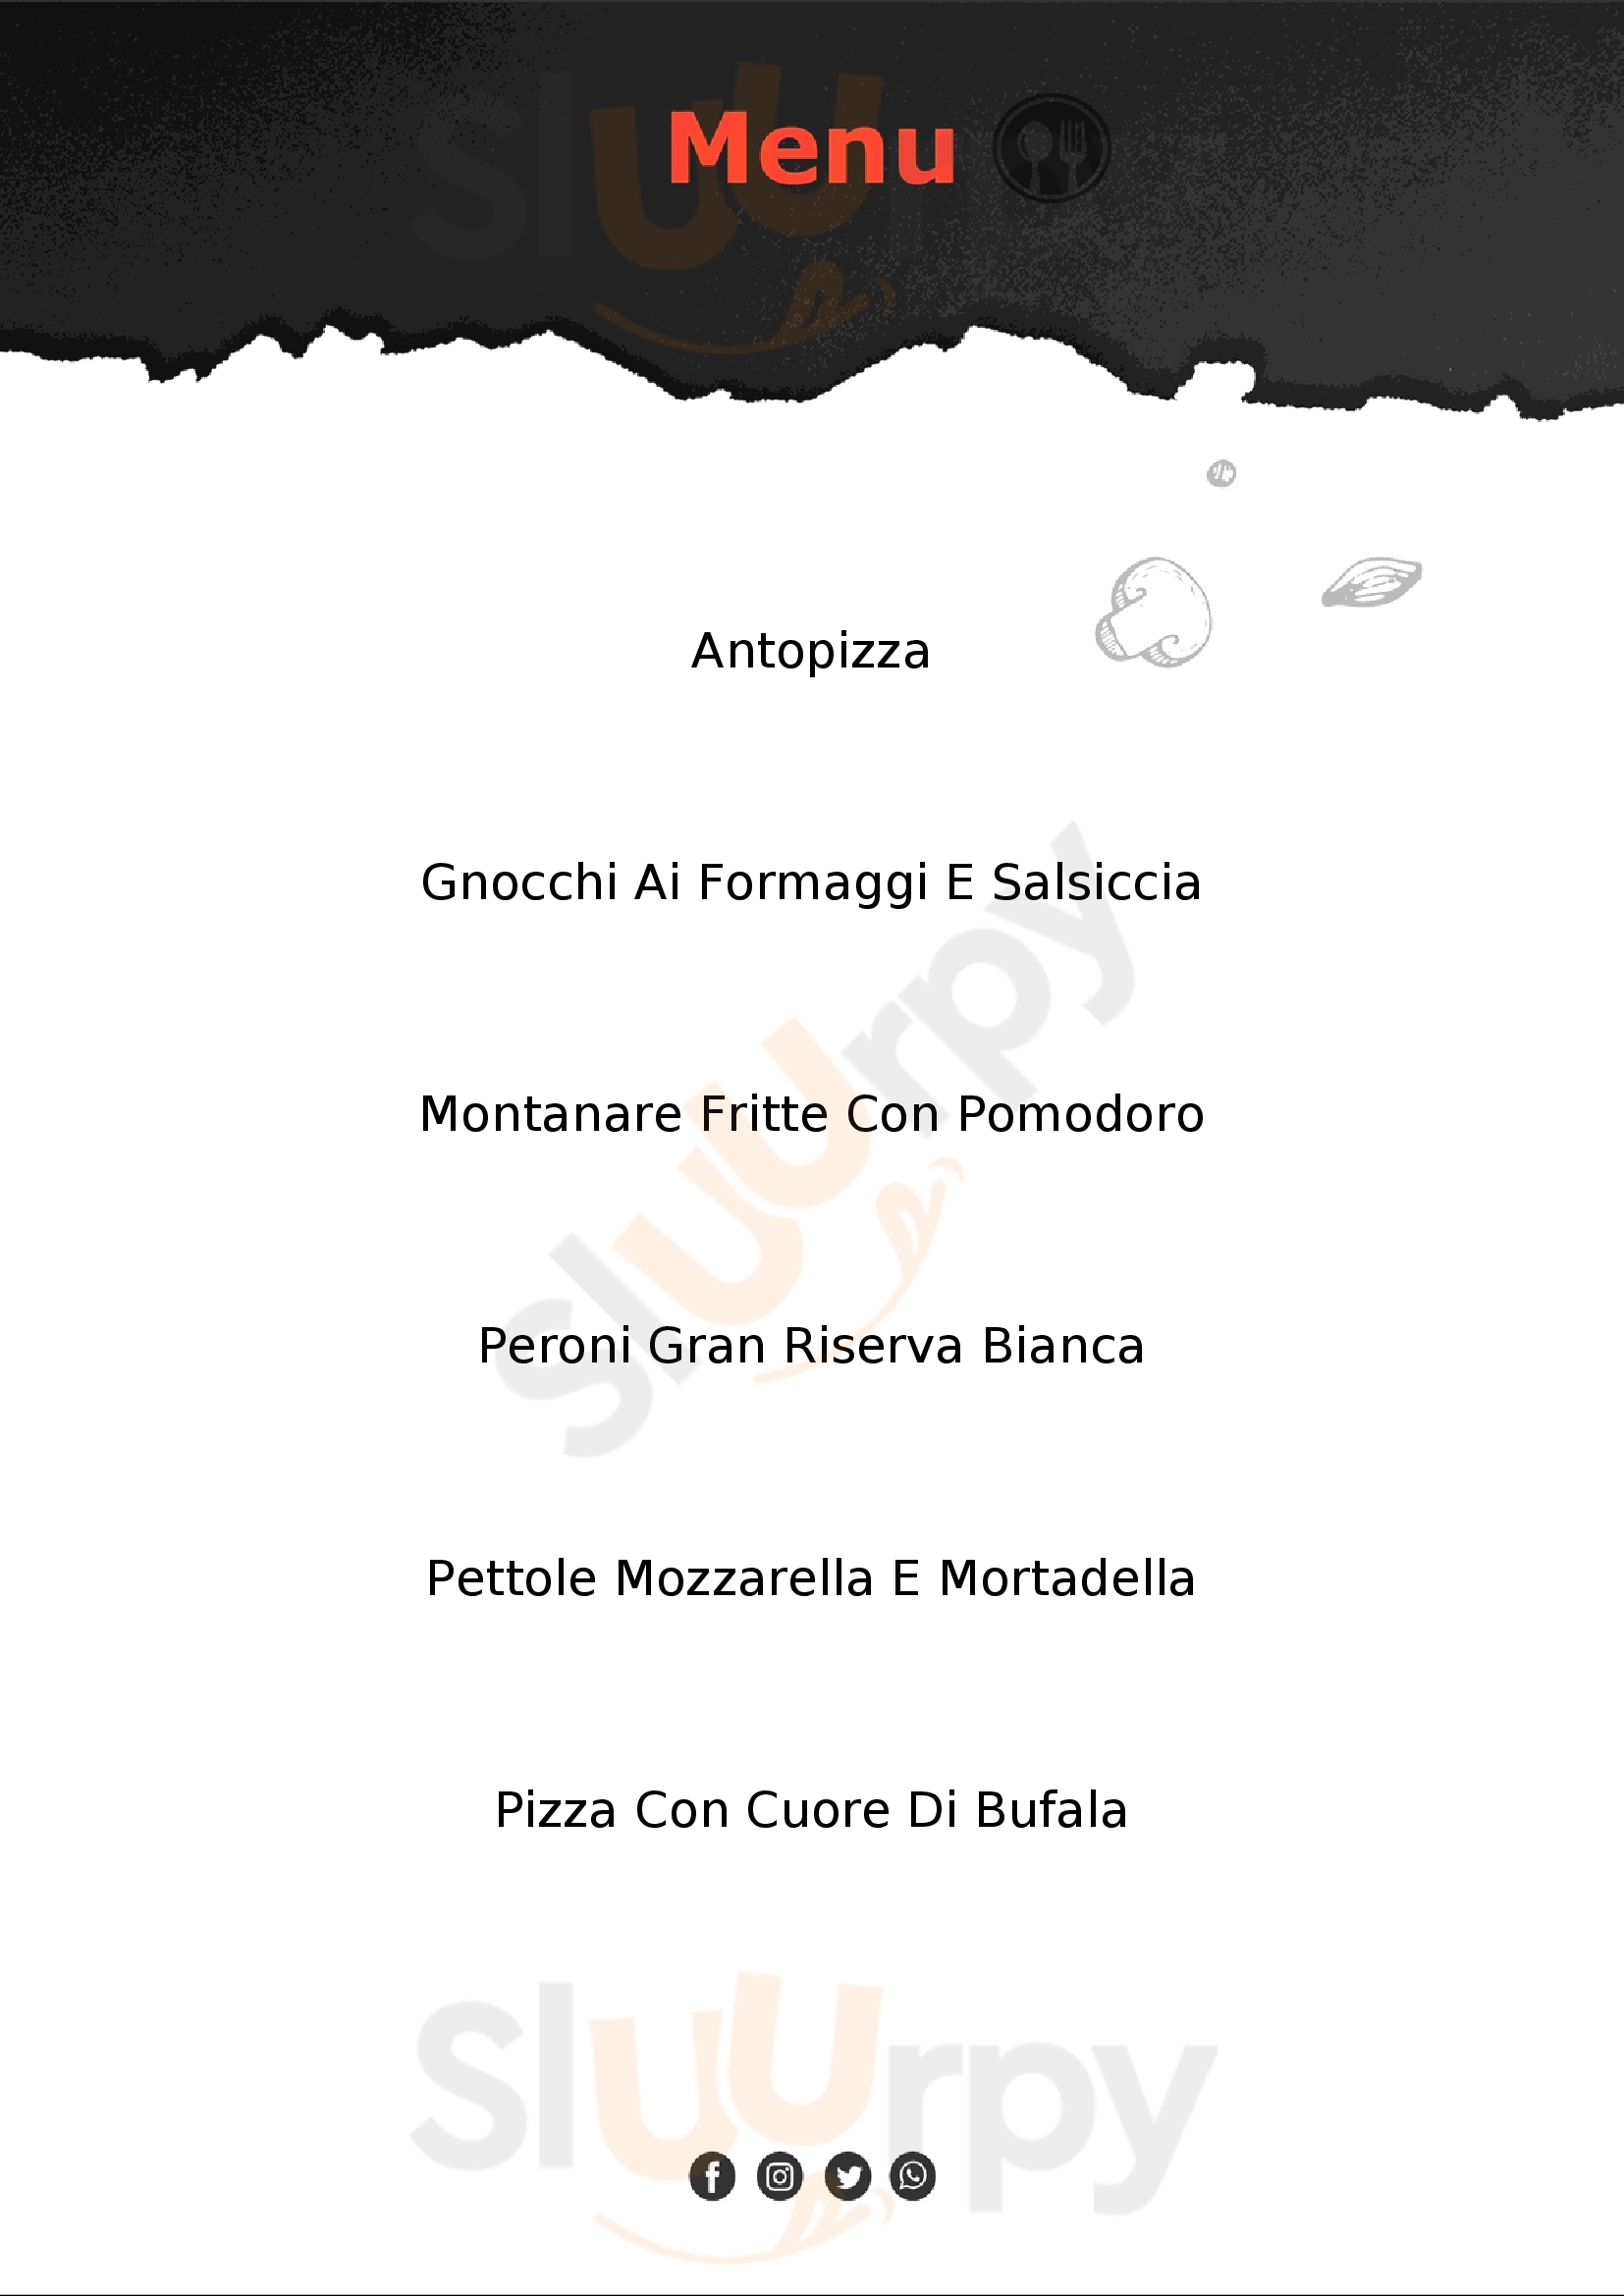 Queen Pizzeria & Ristorante Lavello menù 1 pagina